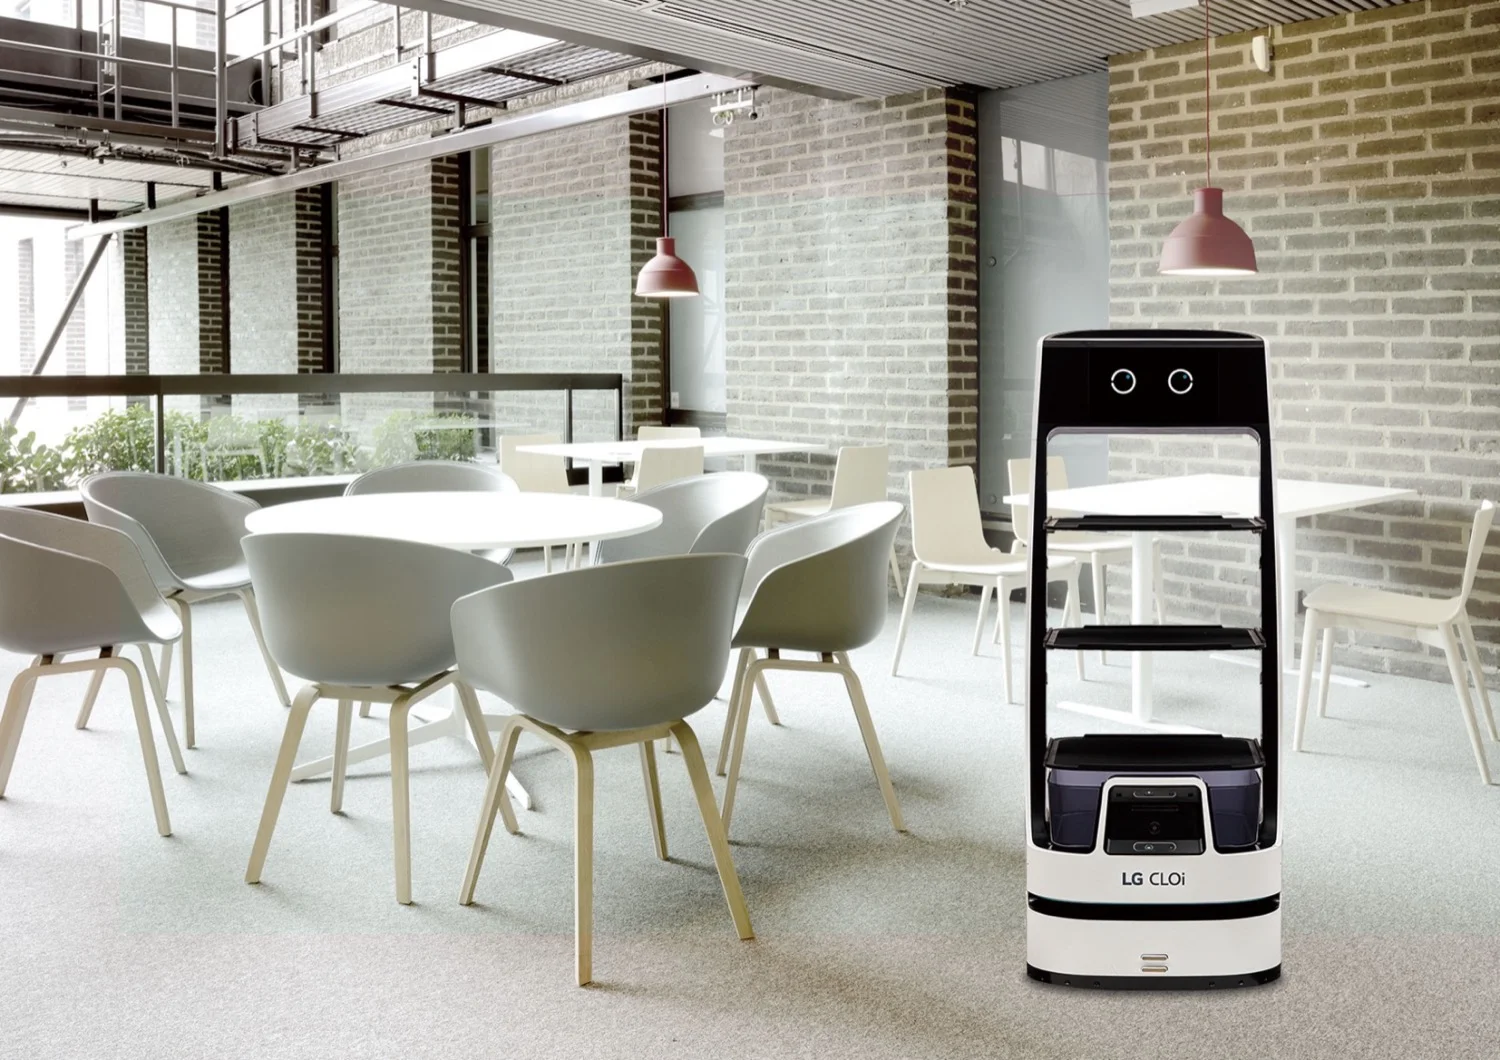 Nuevo robot LG CLOi es ideal para servicio al cliente